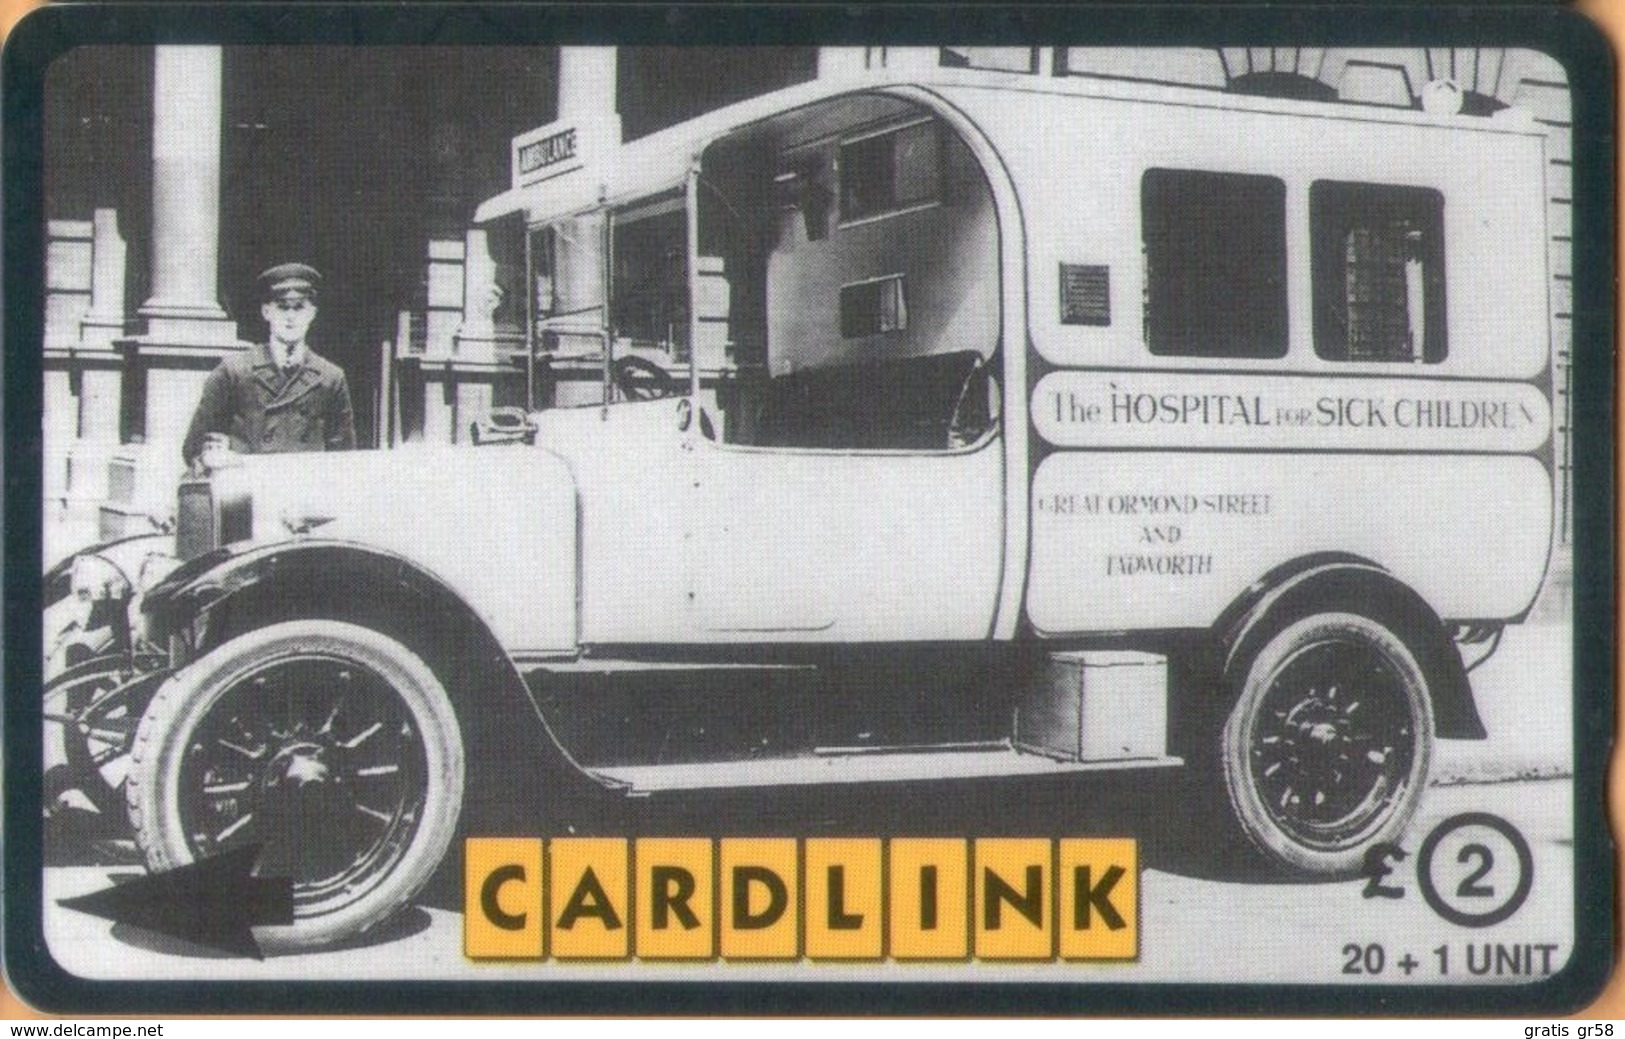 United Kingdom - GPT, 3CLKD, Great Ormond Street Hospital - Old Ambulance, 20+1 U, 3,000ex, Used - [ 5] Eurostar, Cardlink & Railcall